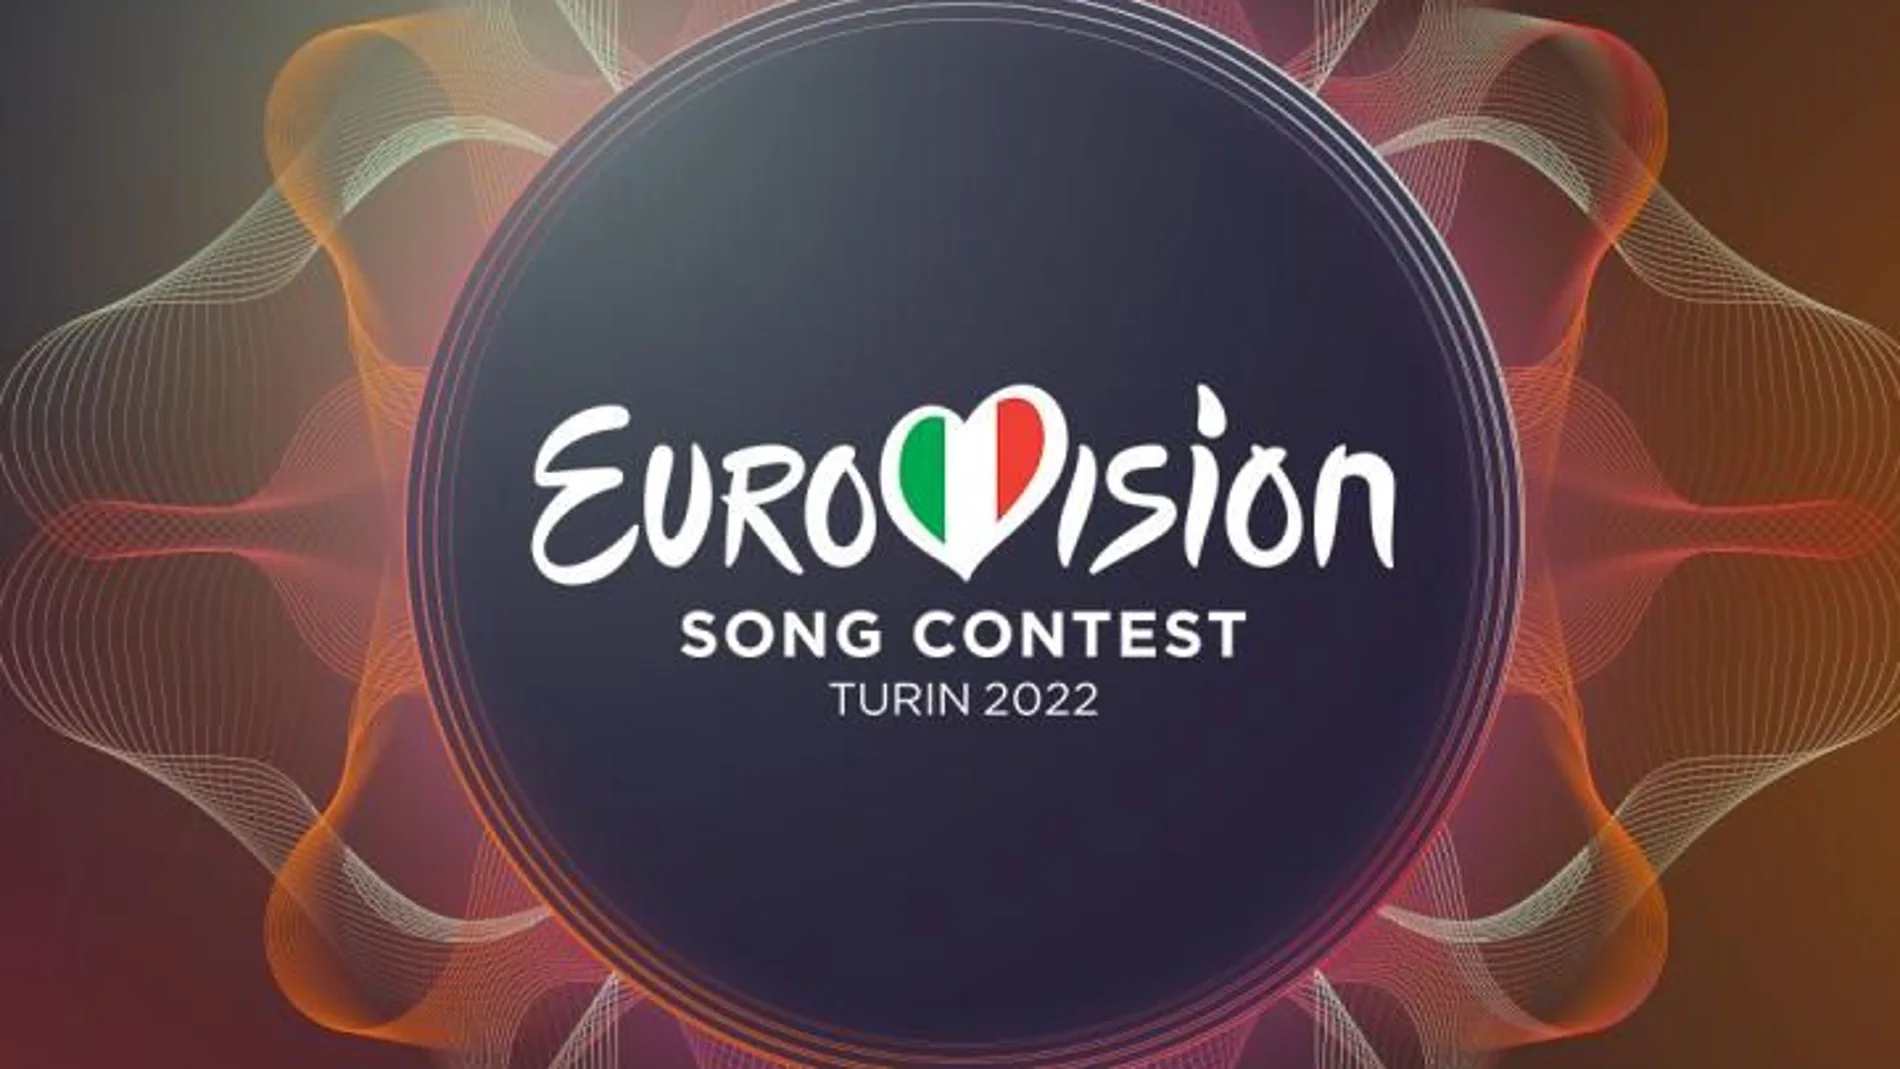 Teseo tinción Validación Cómo funcionan las votaciones en Eurovisión 2022?